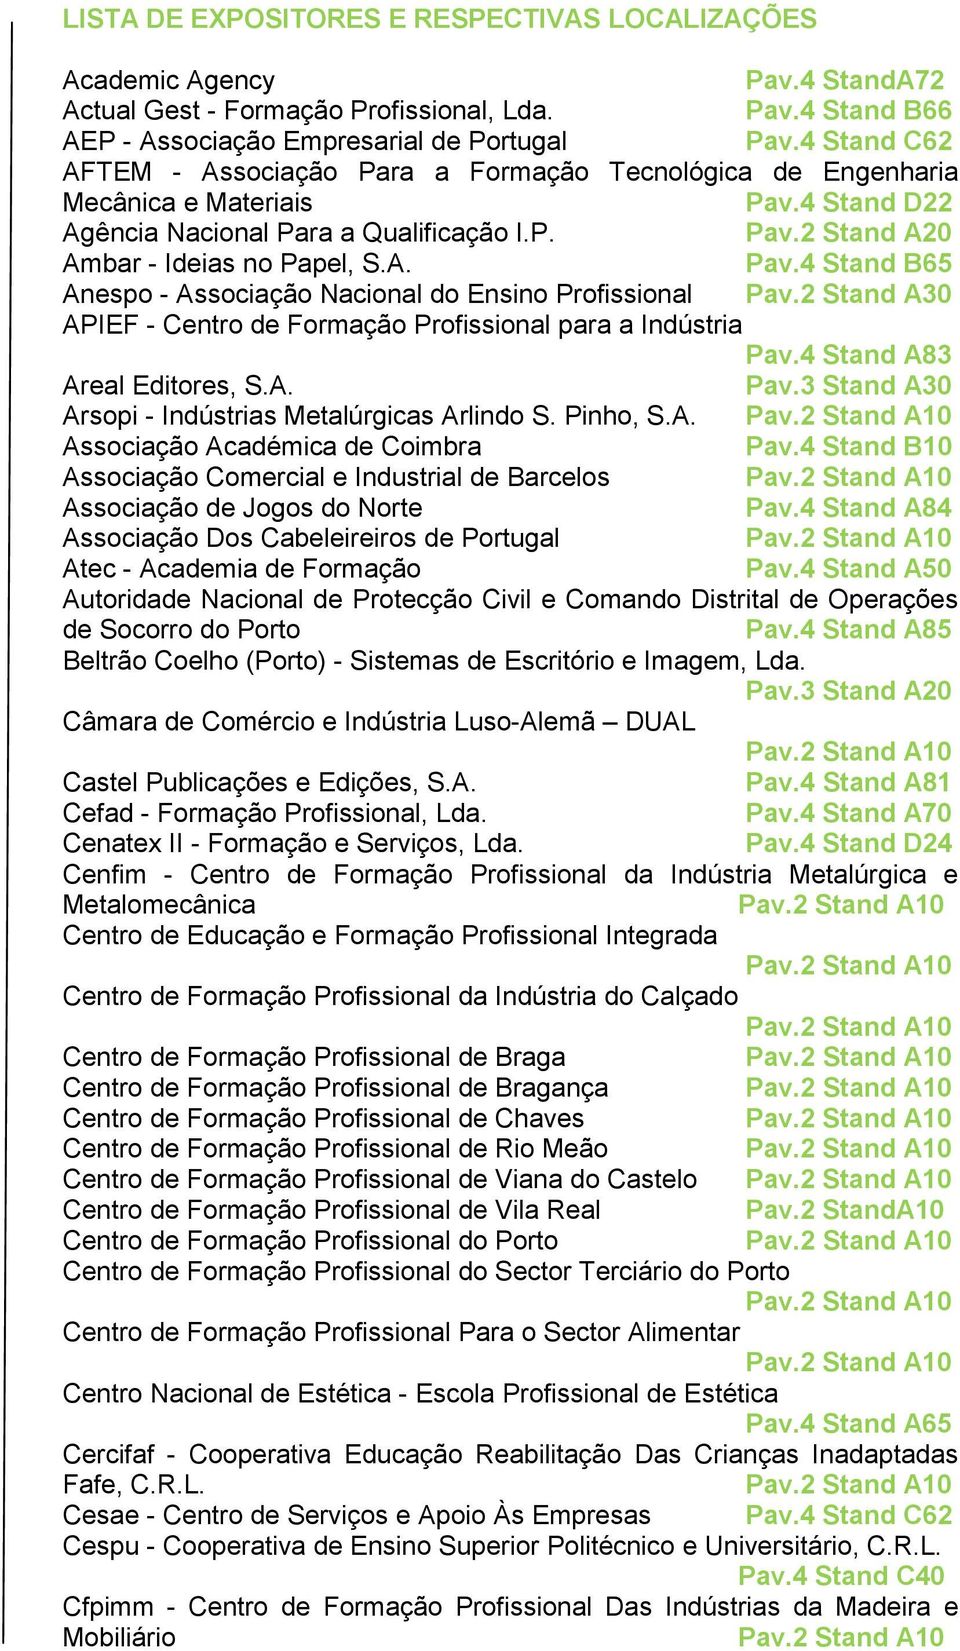 2 Stand A30 APIEF - Centro de Formação Profissional para a Indústria Pav.4 Stand A83 Areal Editores, S.A. Pav.3 Stand A30 Arsopi - Indústrias Metalúrgicas Arlindo S. Pinho, S.A. Associação Académica de Coimbra Associação Comercial e Industrial de Barcelos Associação de Jogos do Norte Pav.